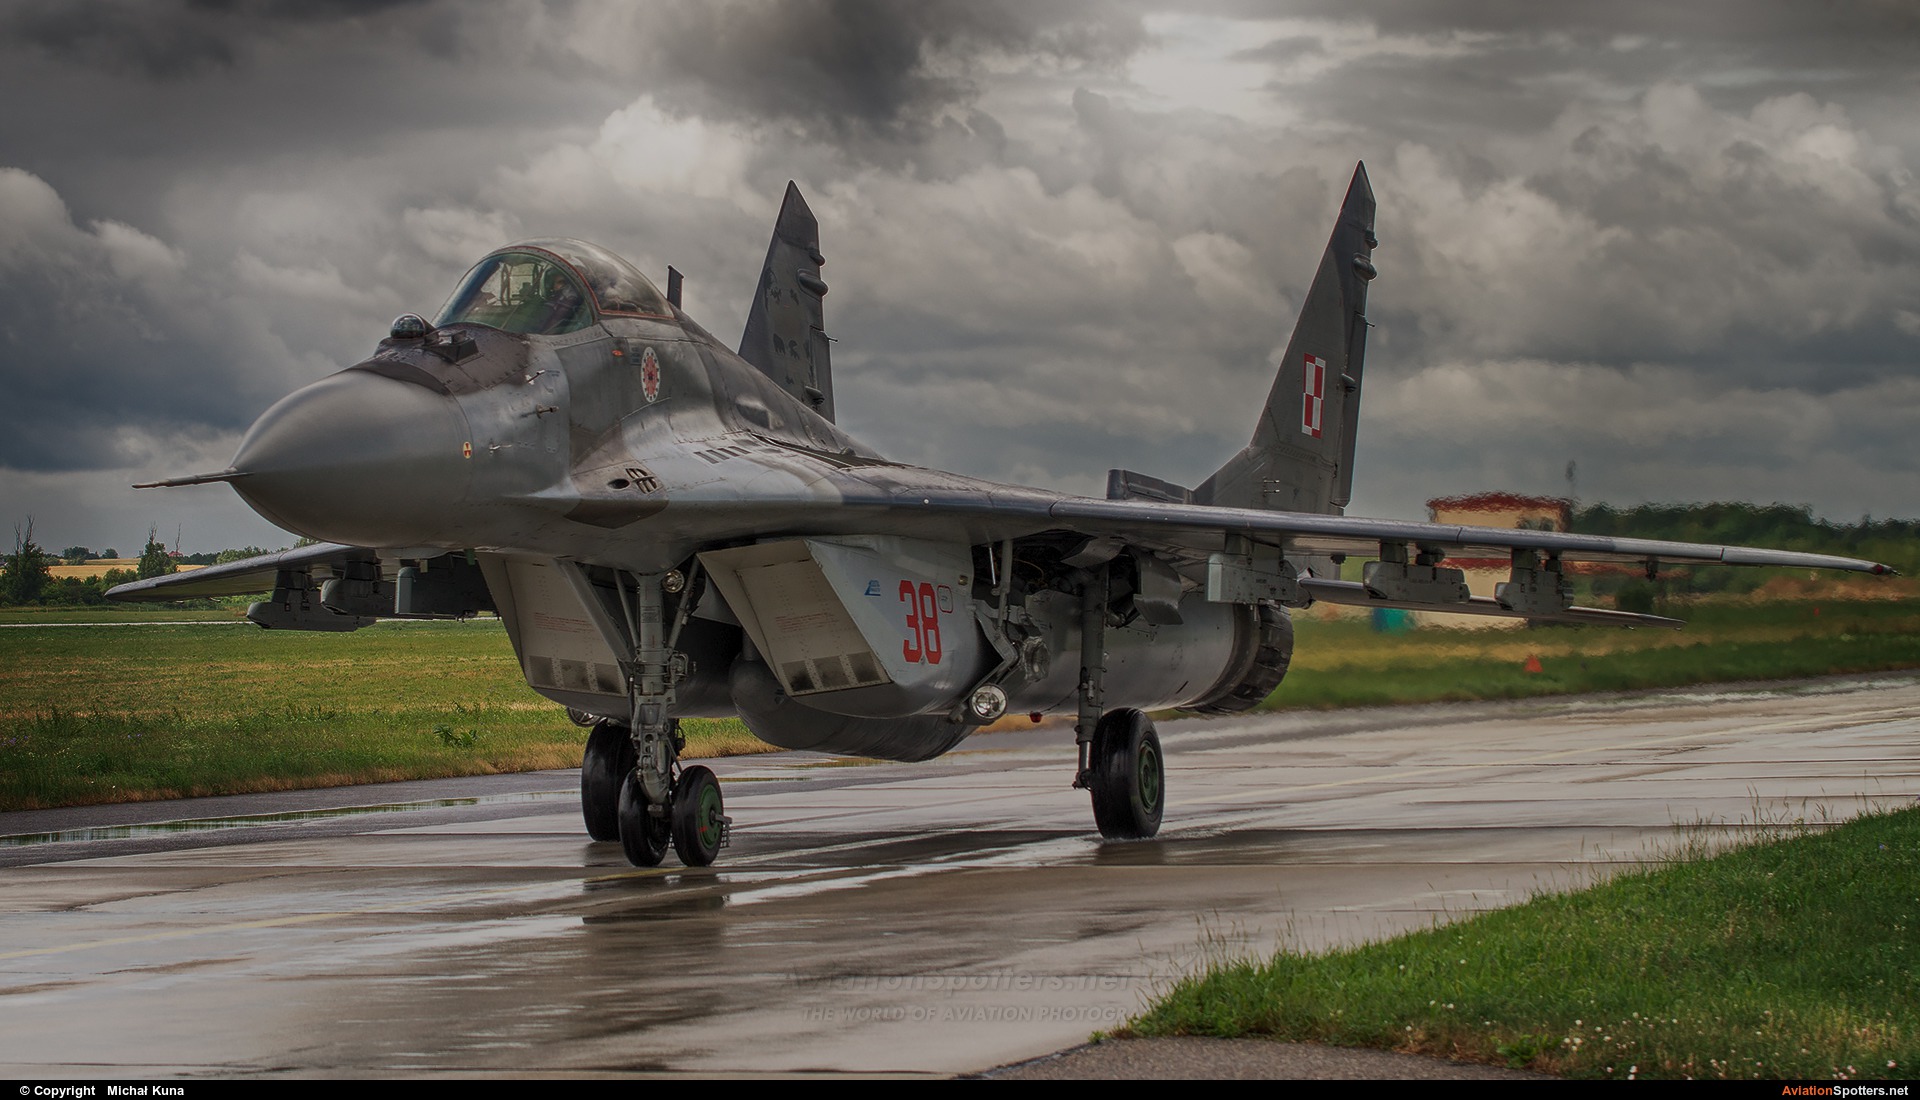 Poland - Air Force  -  MiG-29  (38) By Michał Kuna (big)